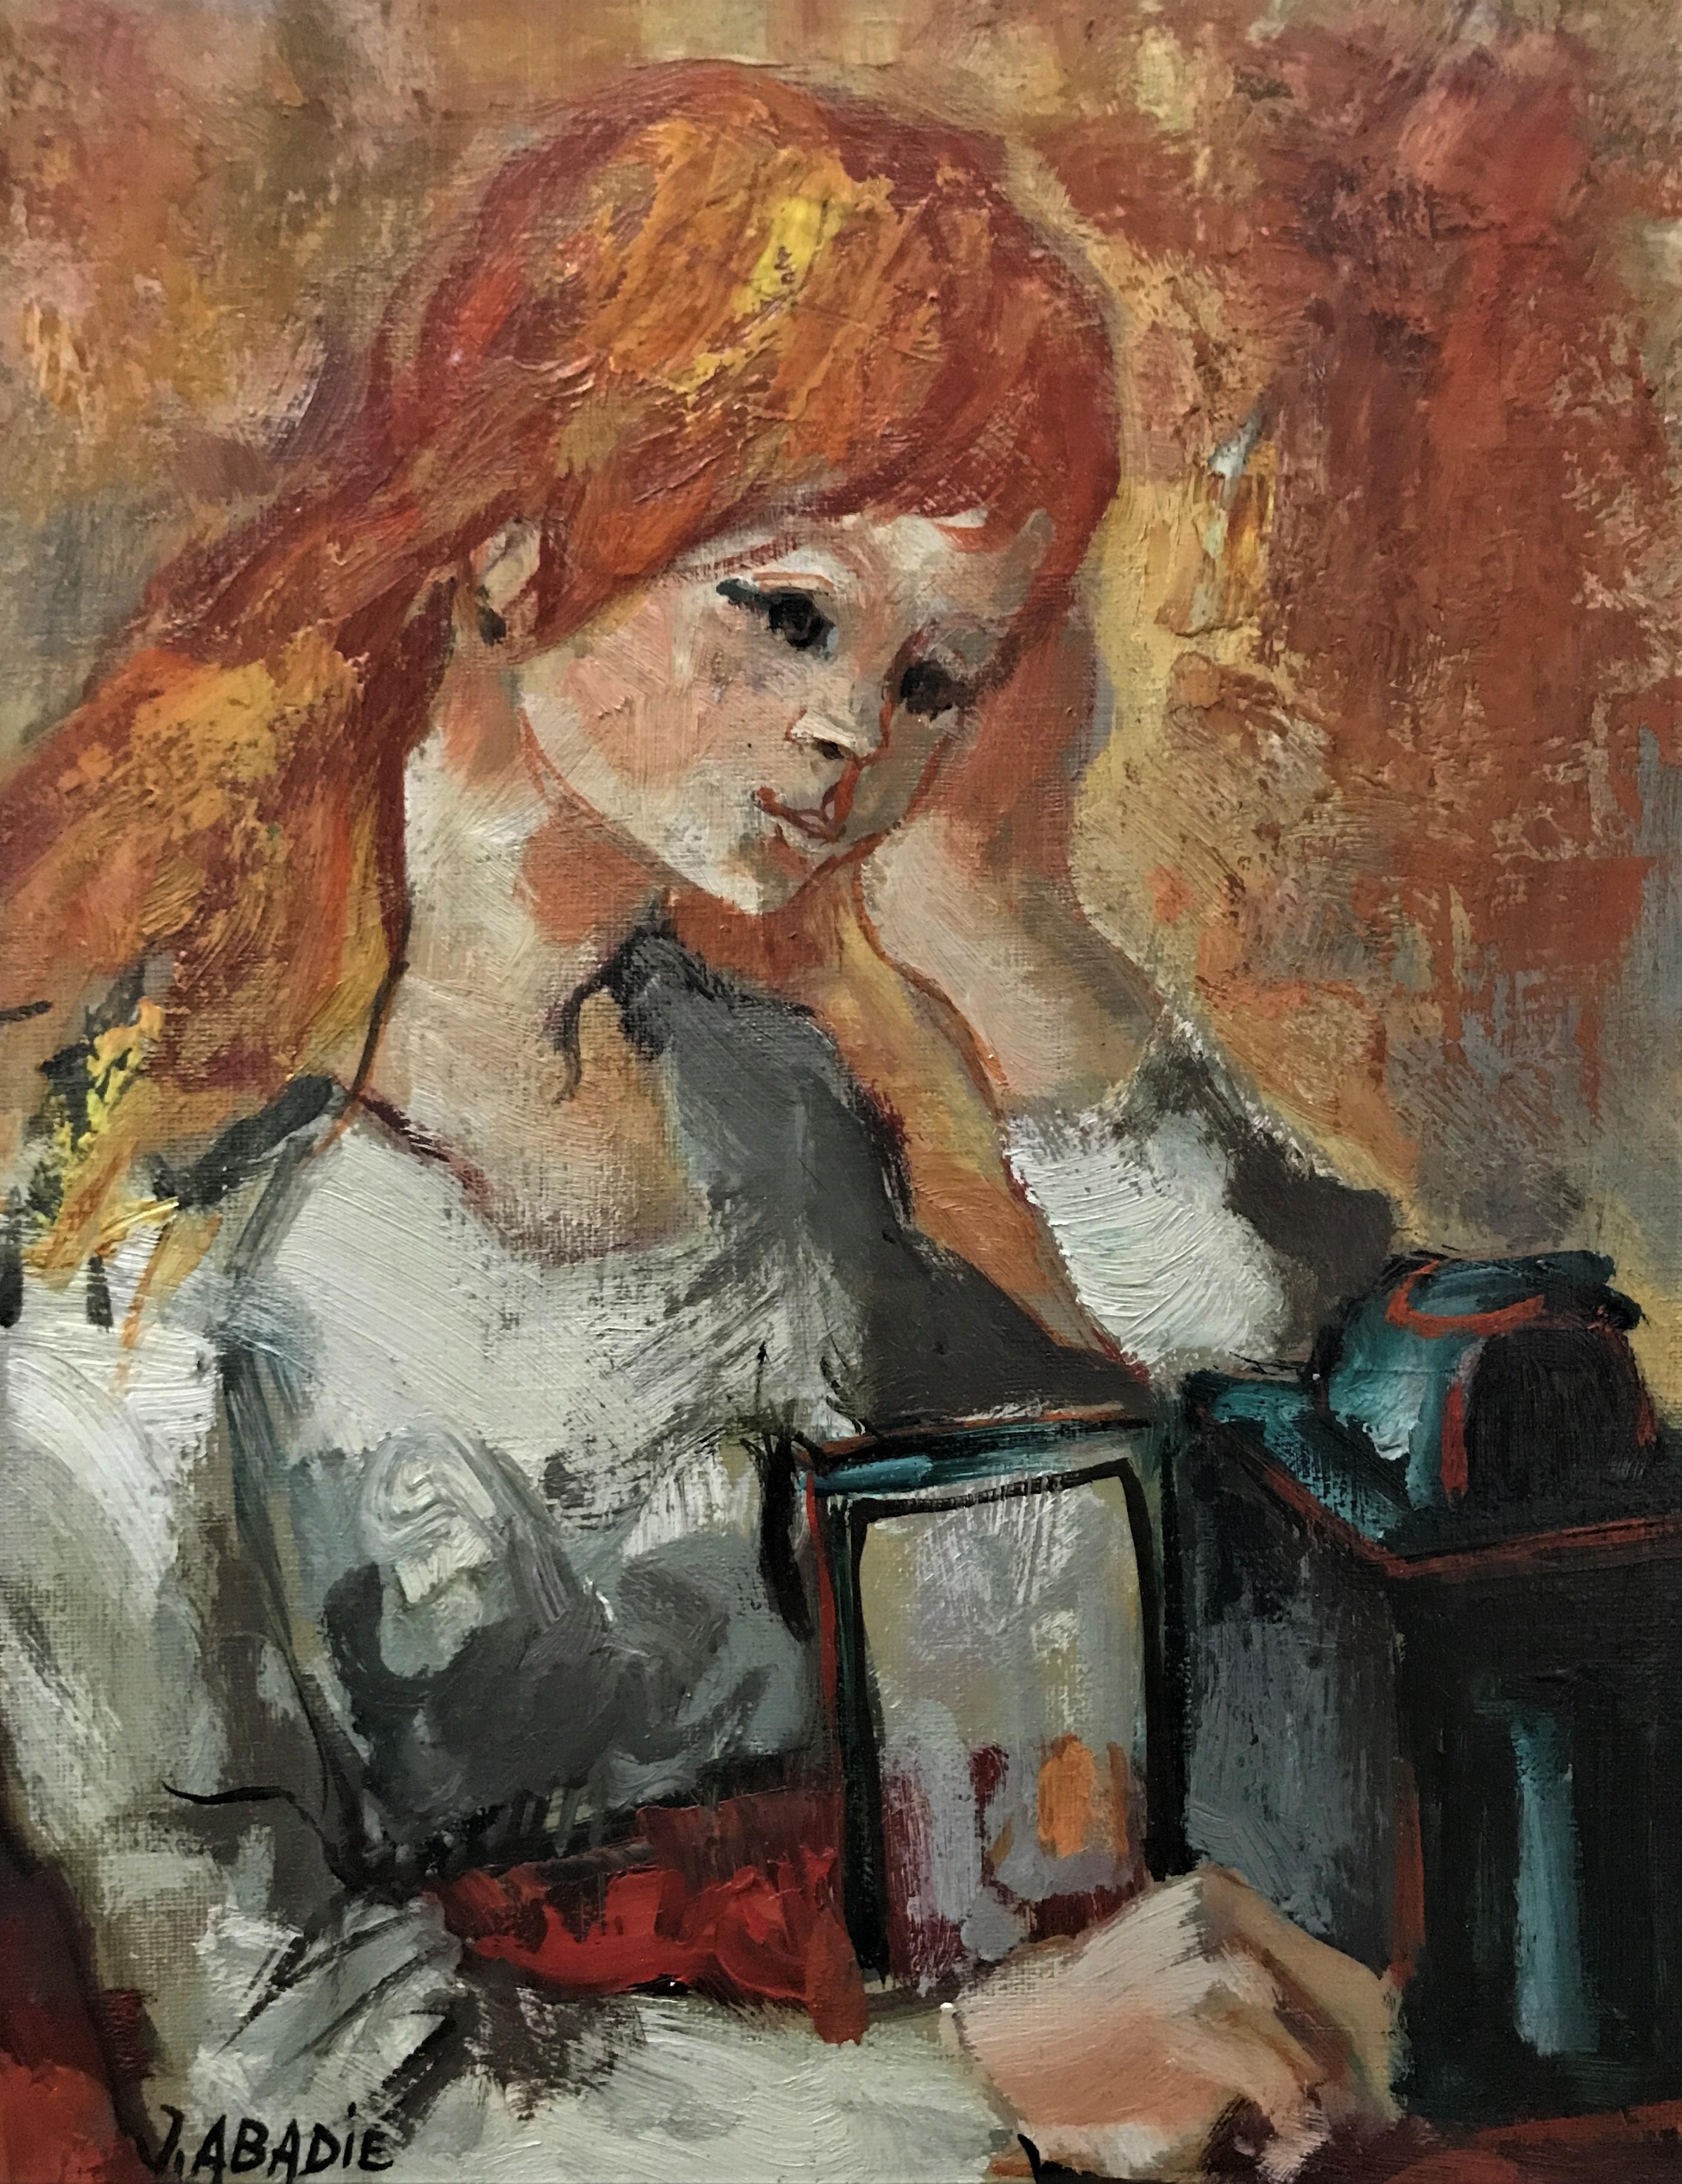 Woman with the Lamp, Original, Öl auf Leinwand, postimpressionistische Malerei des 20. Jahrhunderts, signiert